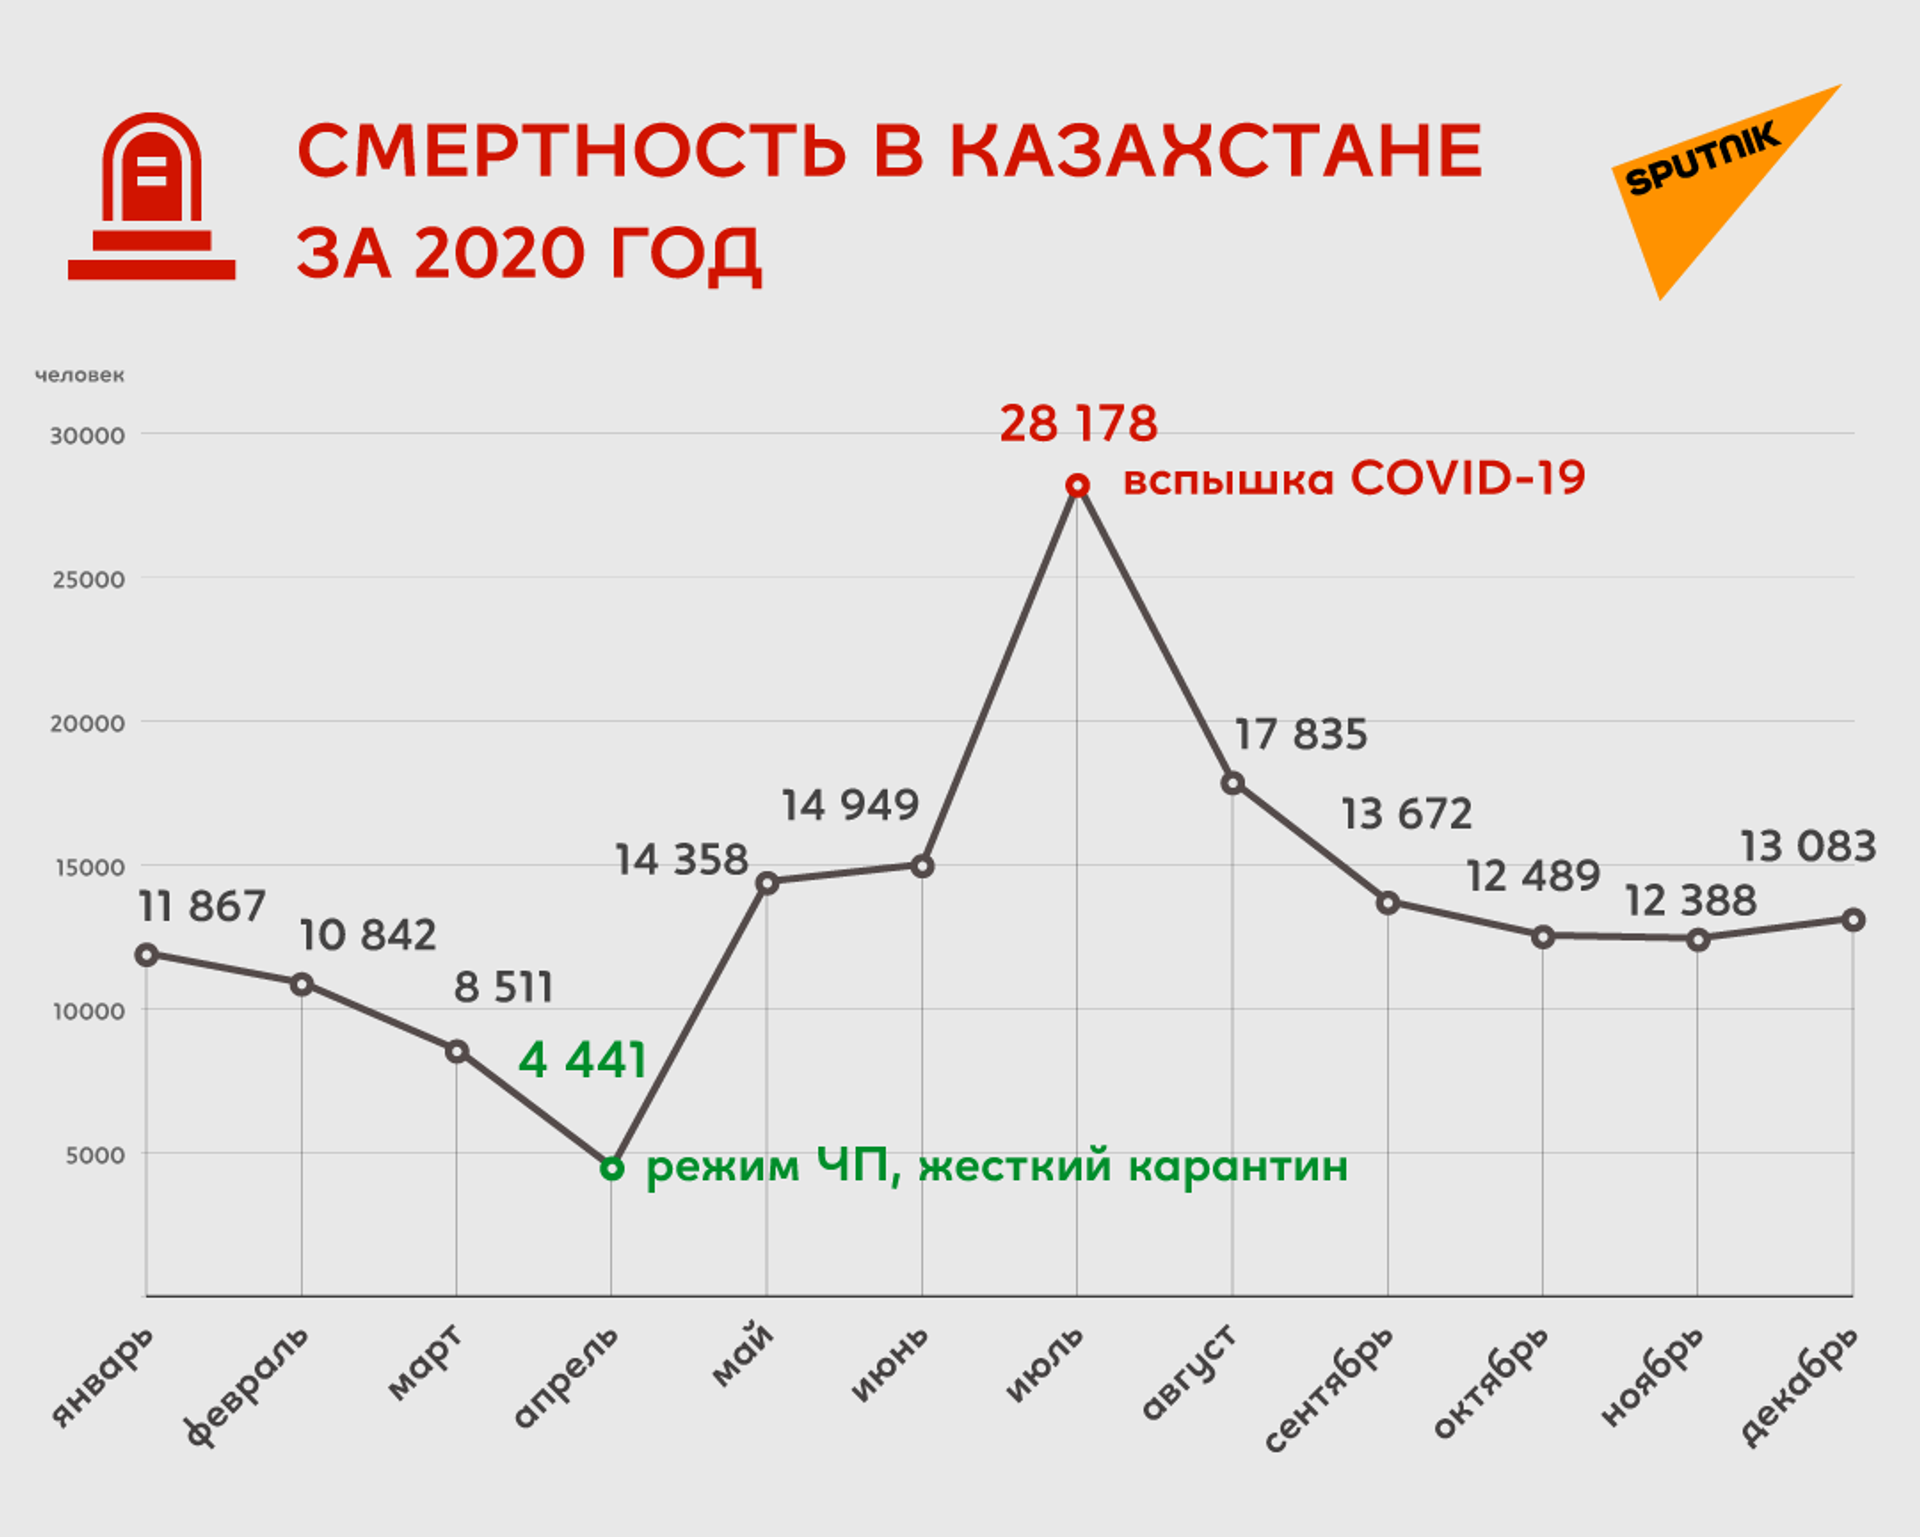 Минздрав назвал причины рекордной смертности в 2020 году в Казахстане - Sputnik Казахстан, 1920, 13.05.2021